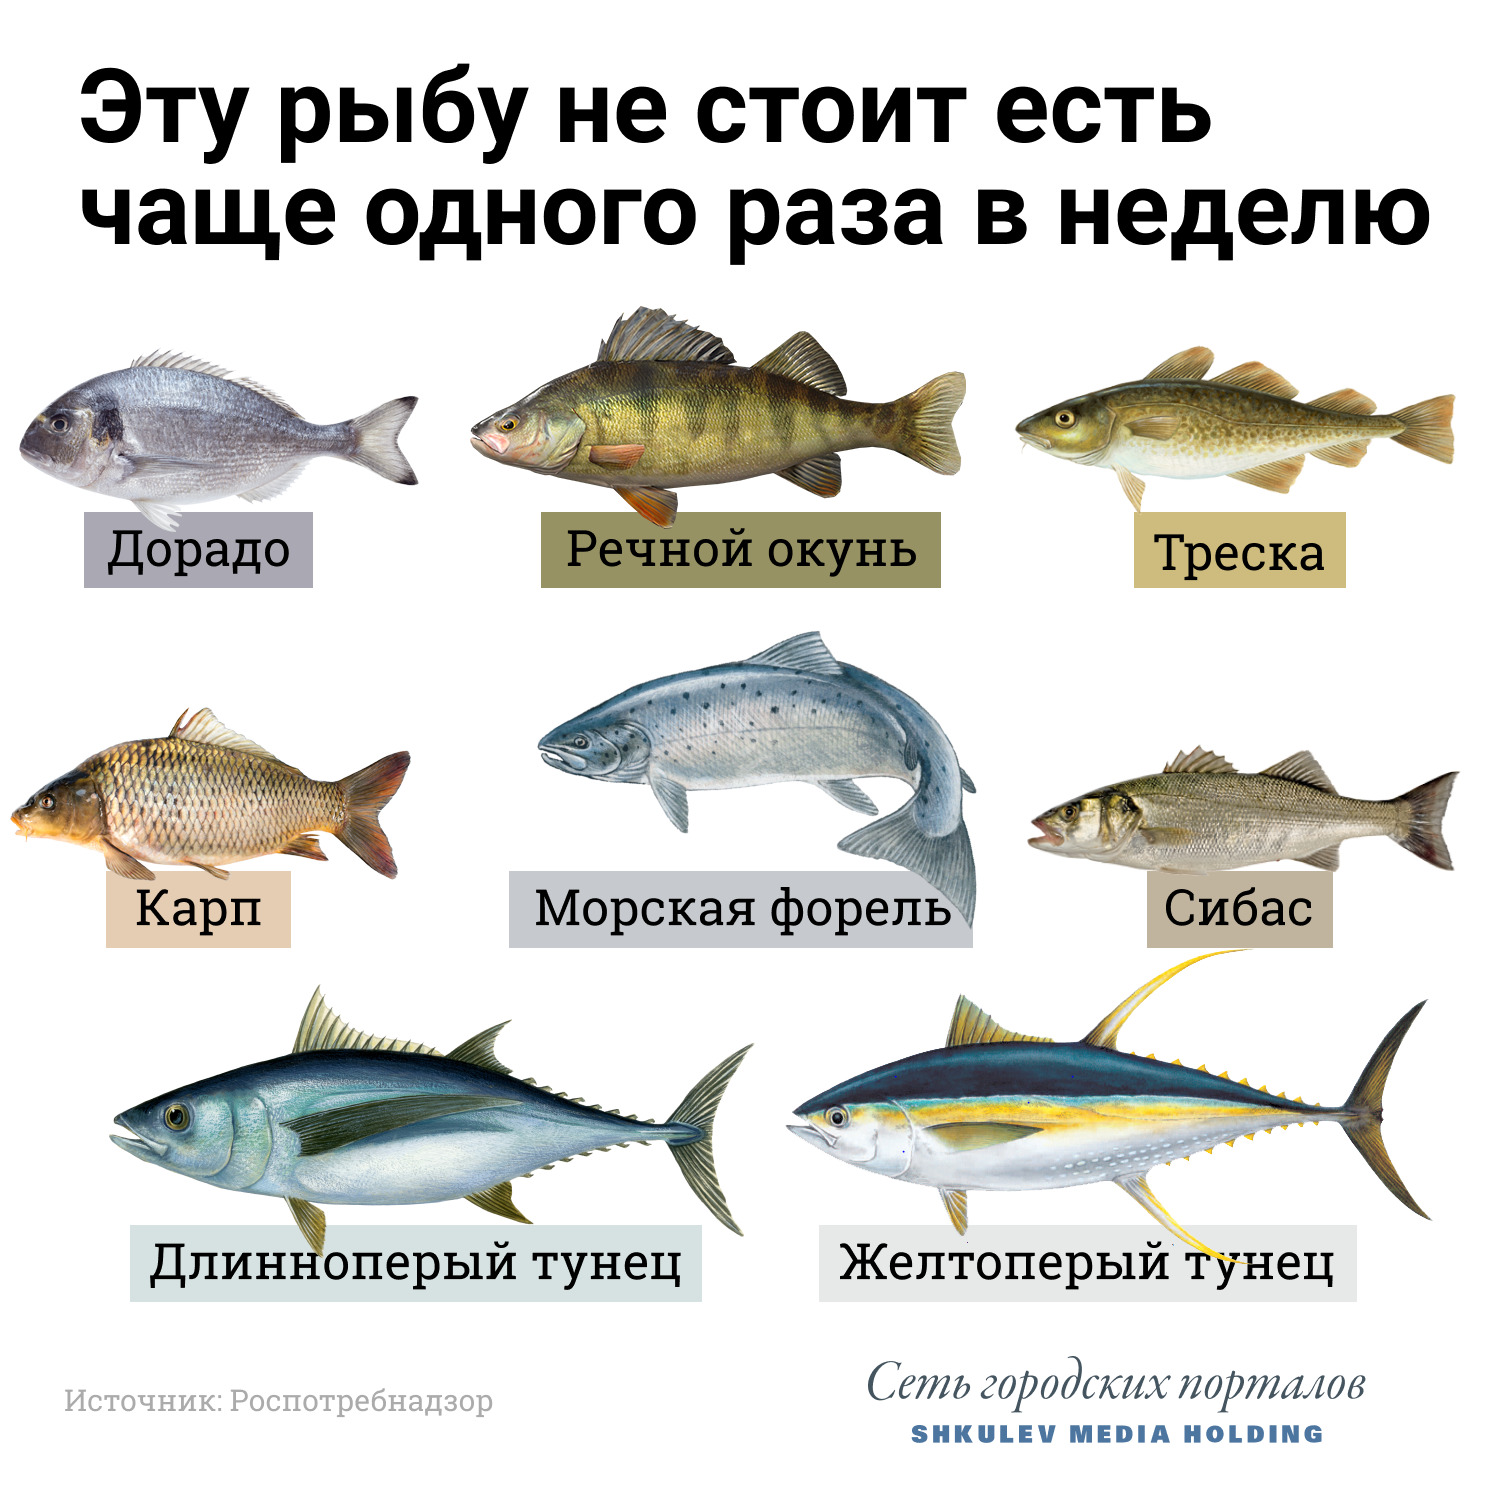 Посмотрите на хребет: 15 видов рыбы, которую лучше не есть больше, который, говорит, Калистратов, городских, Барташевич, Галина, только, стоит, лучше, лосось, может, продукты, могут, холестерина, чтобы, добавлением, продуктов, которые, заморозка